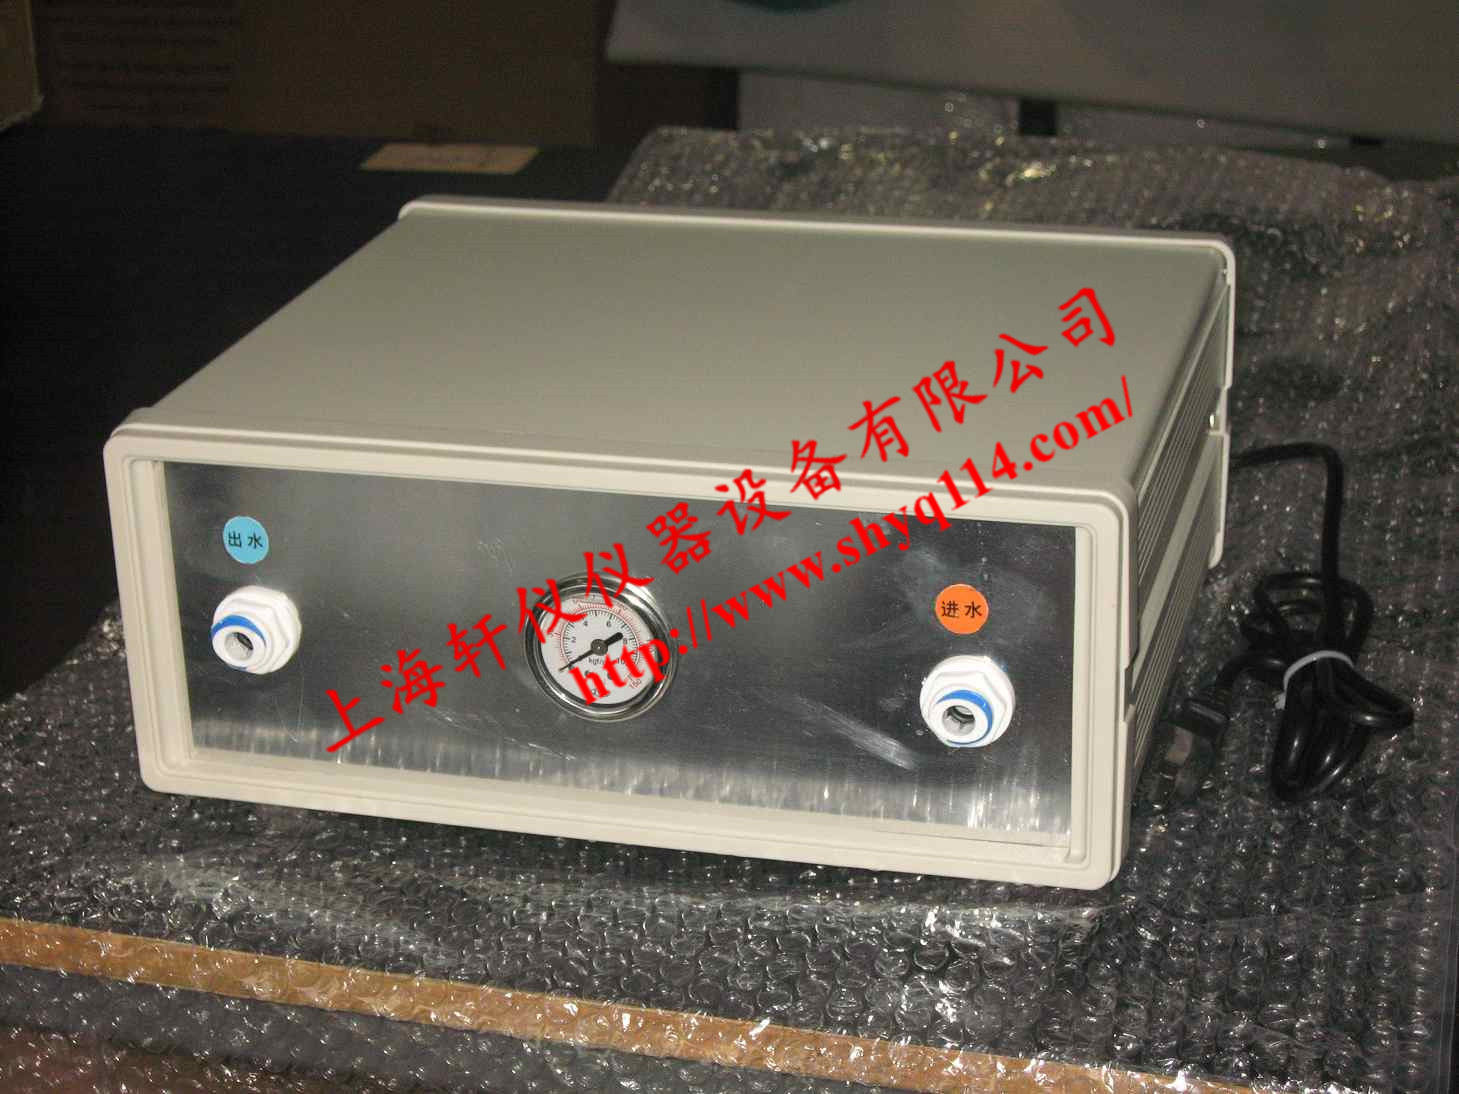 上海轩仪SDI污染指数测定仪增压泵PUMP